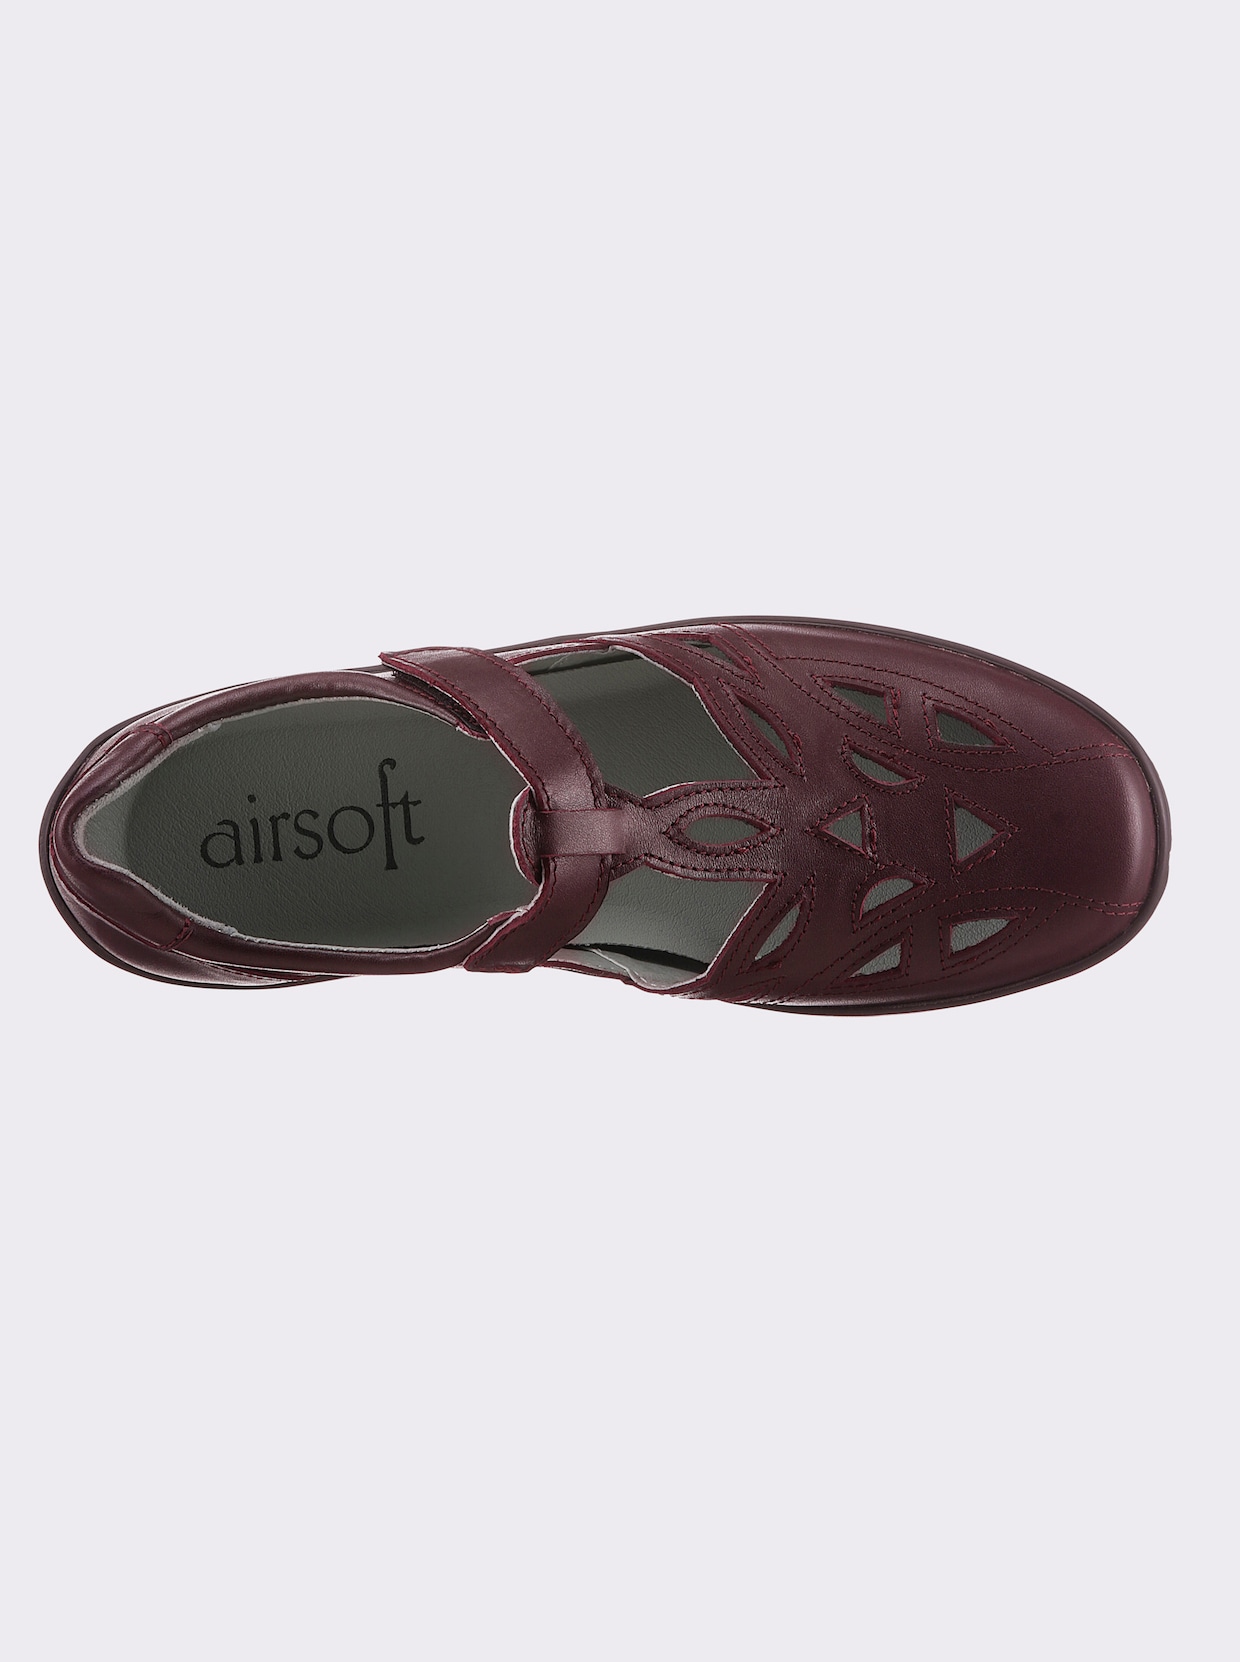 airsoft comfort+ Obuv na suchý zip - bordó